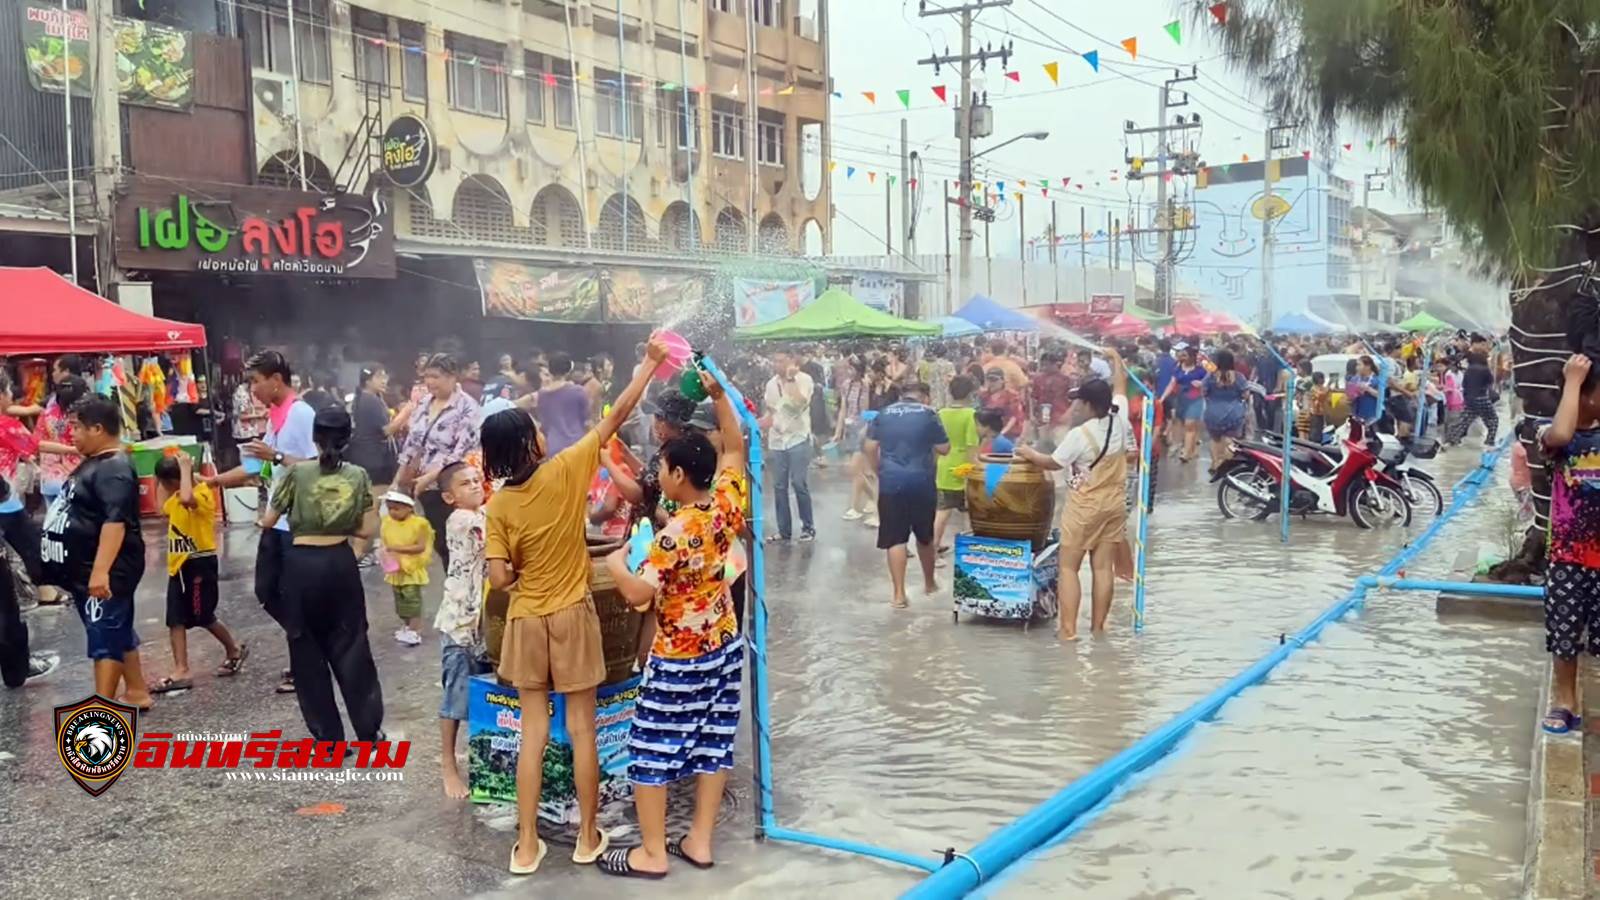 ราชบุรี-สงกรานต์สุดคึกคัก..!! นักท่องเที่ยวนับหมื่นแห่เล่นสาดน้ำถนนข้าวไข่เจียว